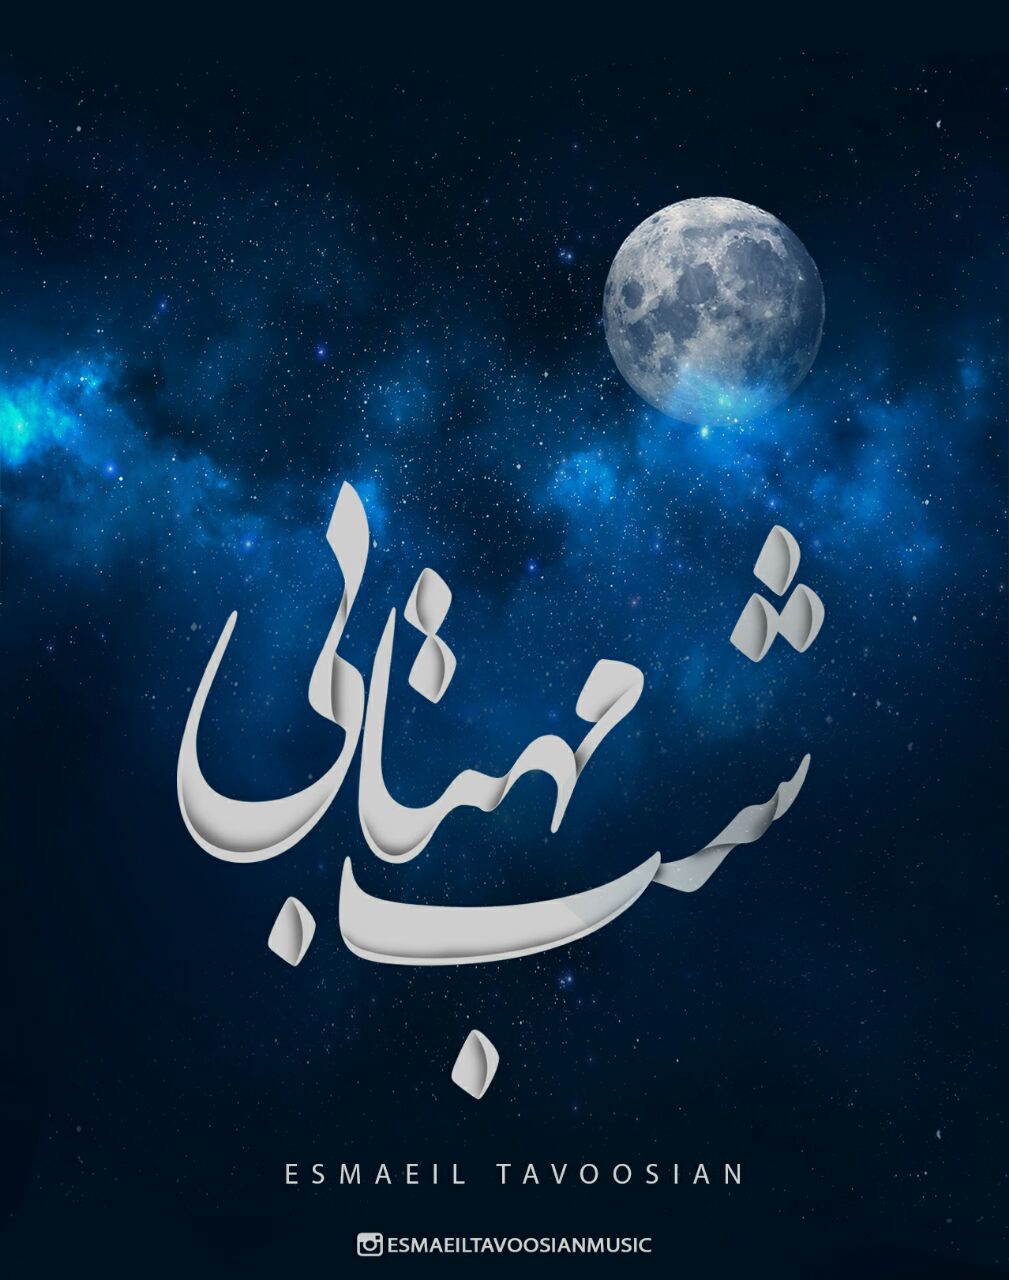 دانلود بیت زیبای شب مهتابی از اسماعیل طاووسیان